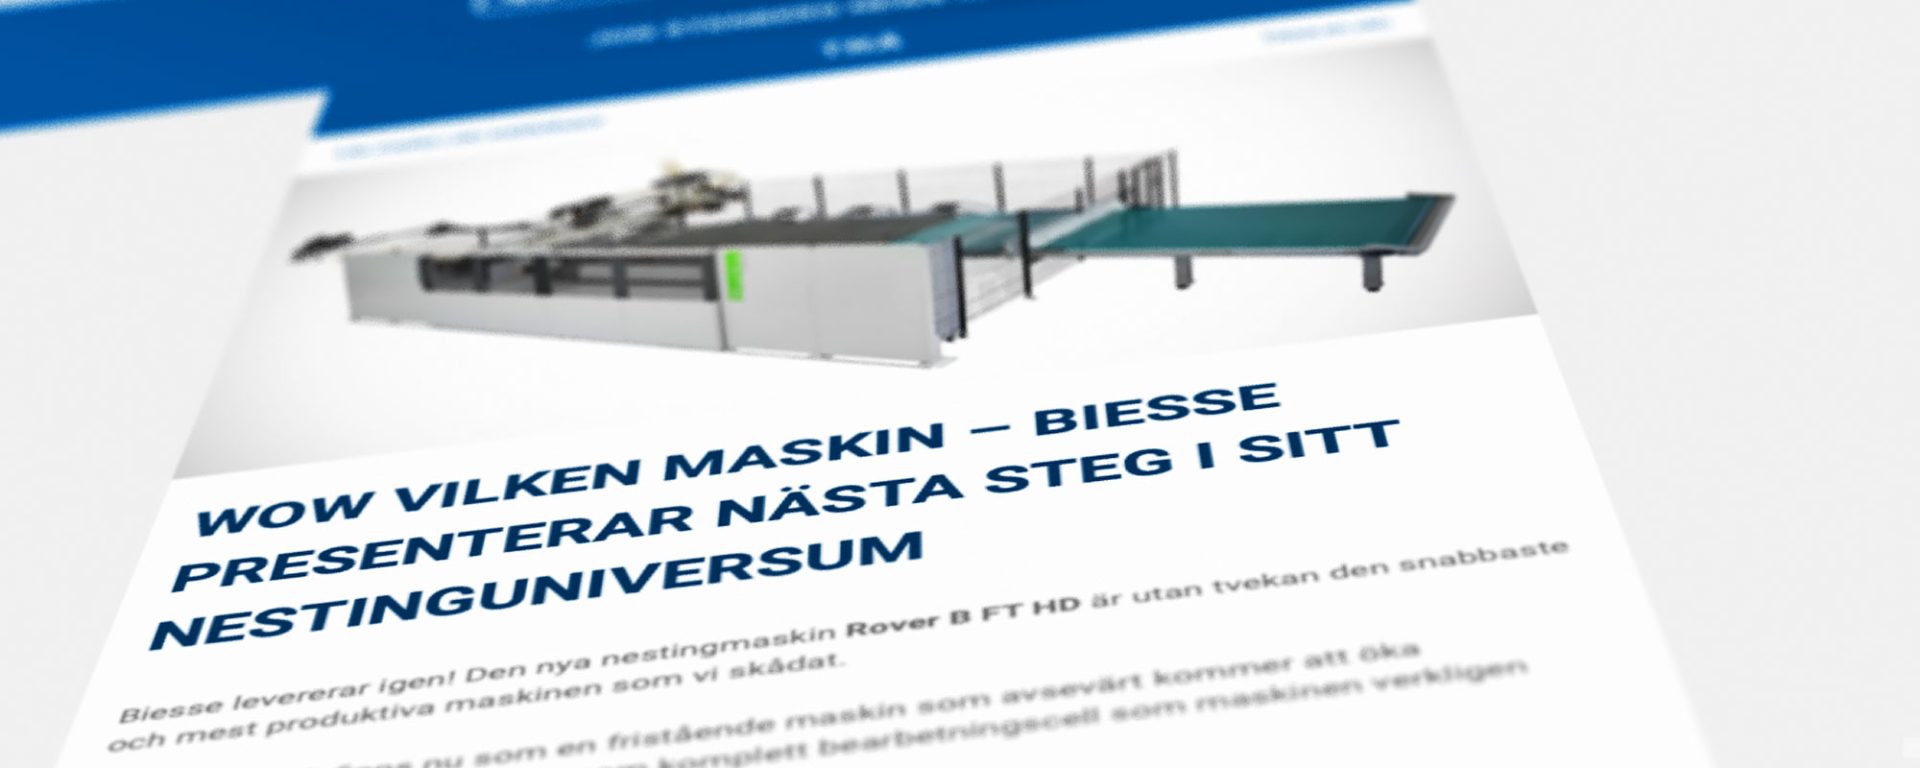 Biesses nya nestingmaskin, Leksands gymnasium, träteknikerutbildningen i Hammarö, utsug från Riedex och Makors webbinarium.